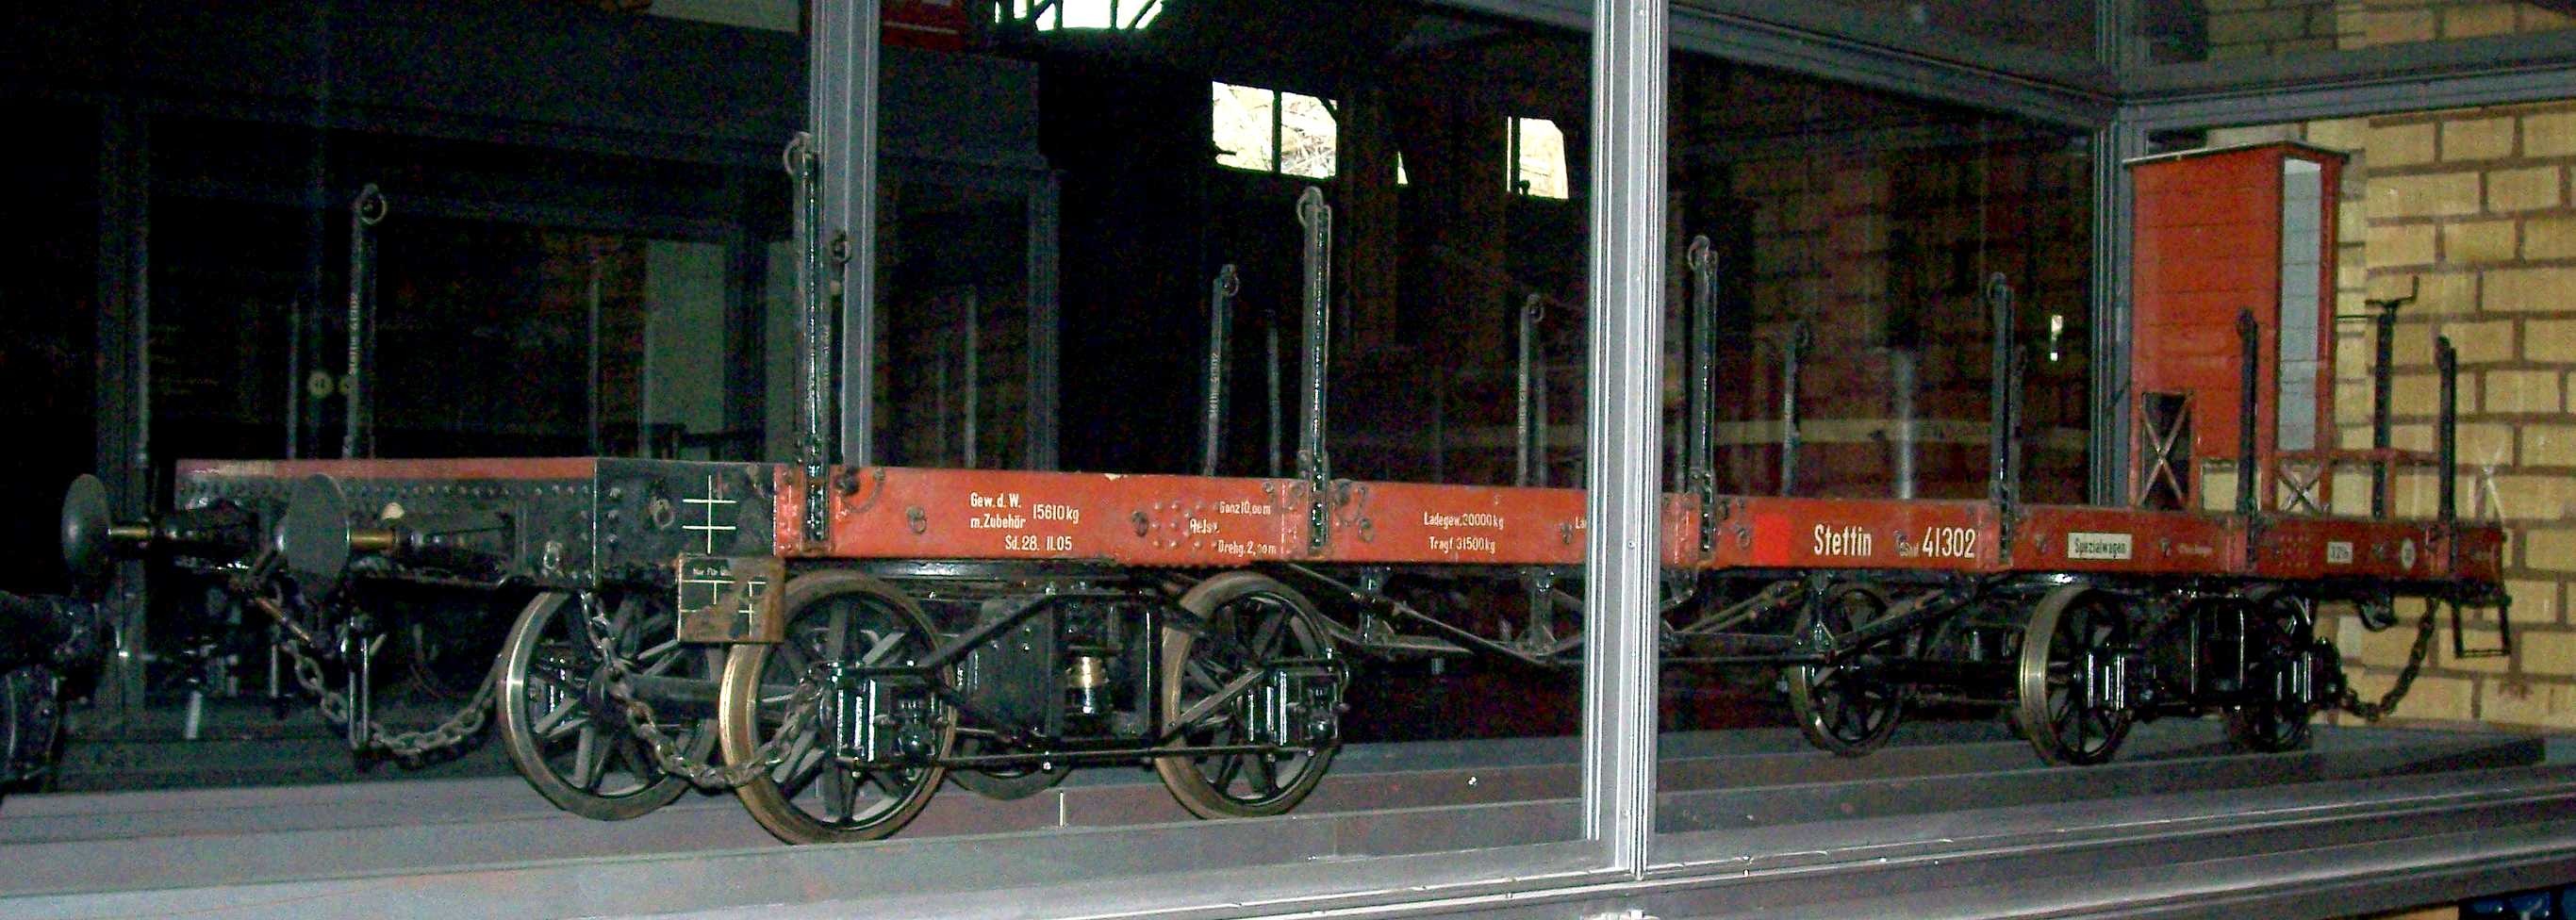 Vierachsiger Schienenwagen, Plattformwagen "Stettin 41302", Modell 1:5 (Stiftung Deutsches Technikmuseum Berlin CC0)